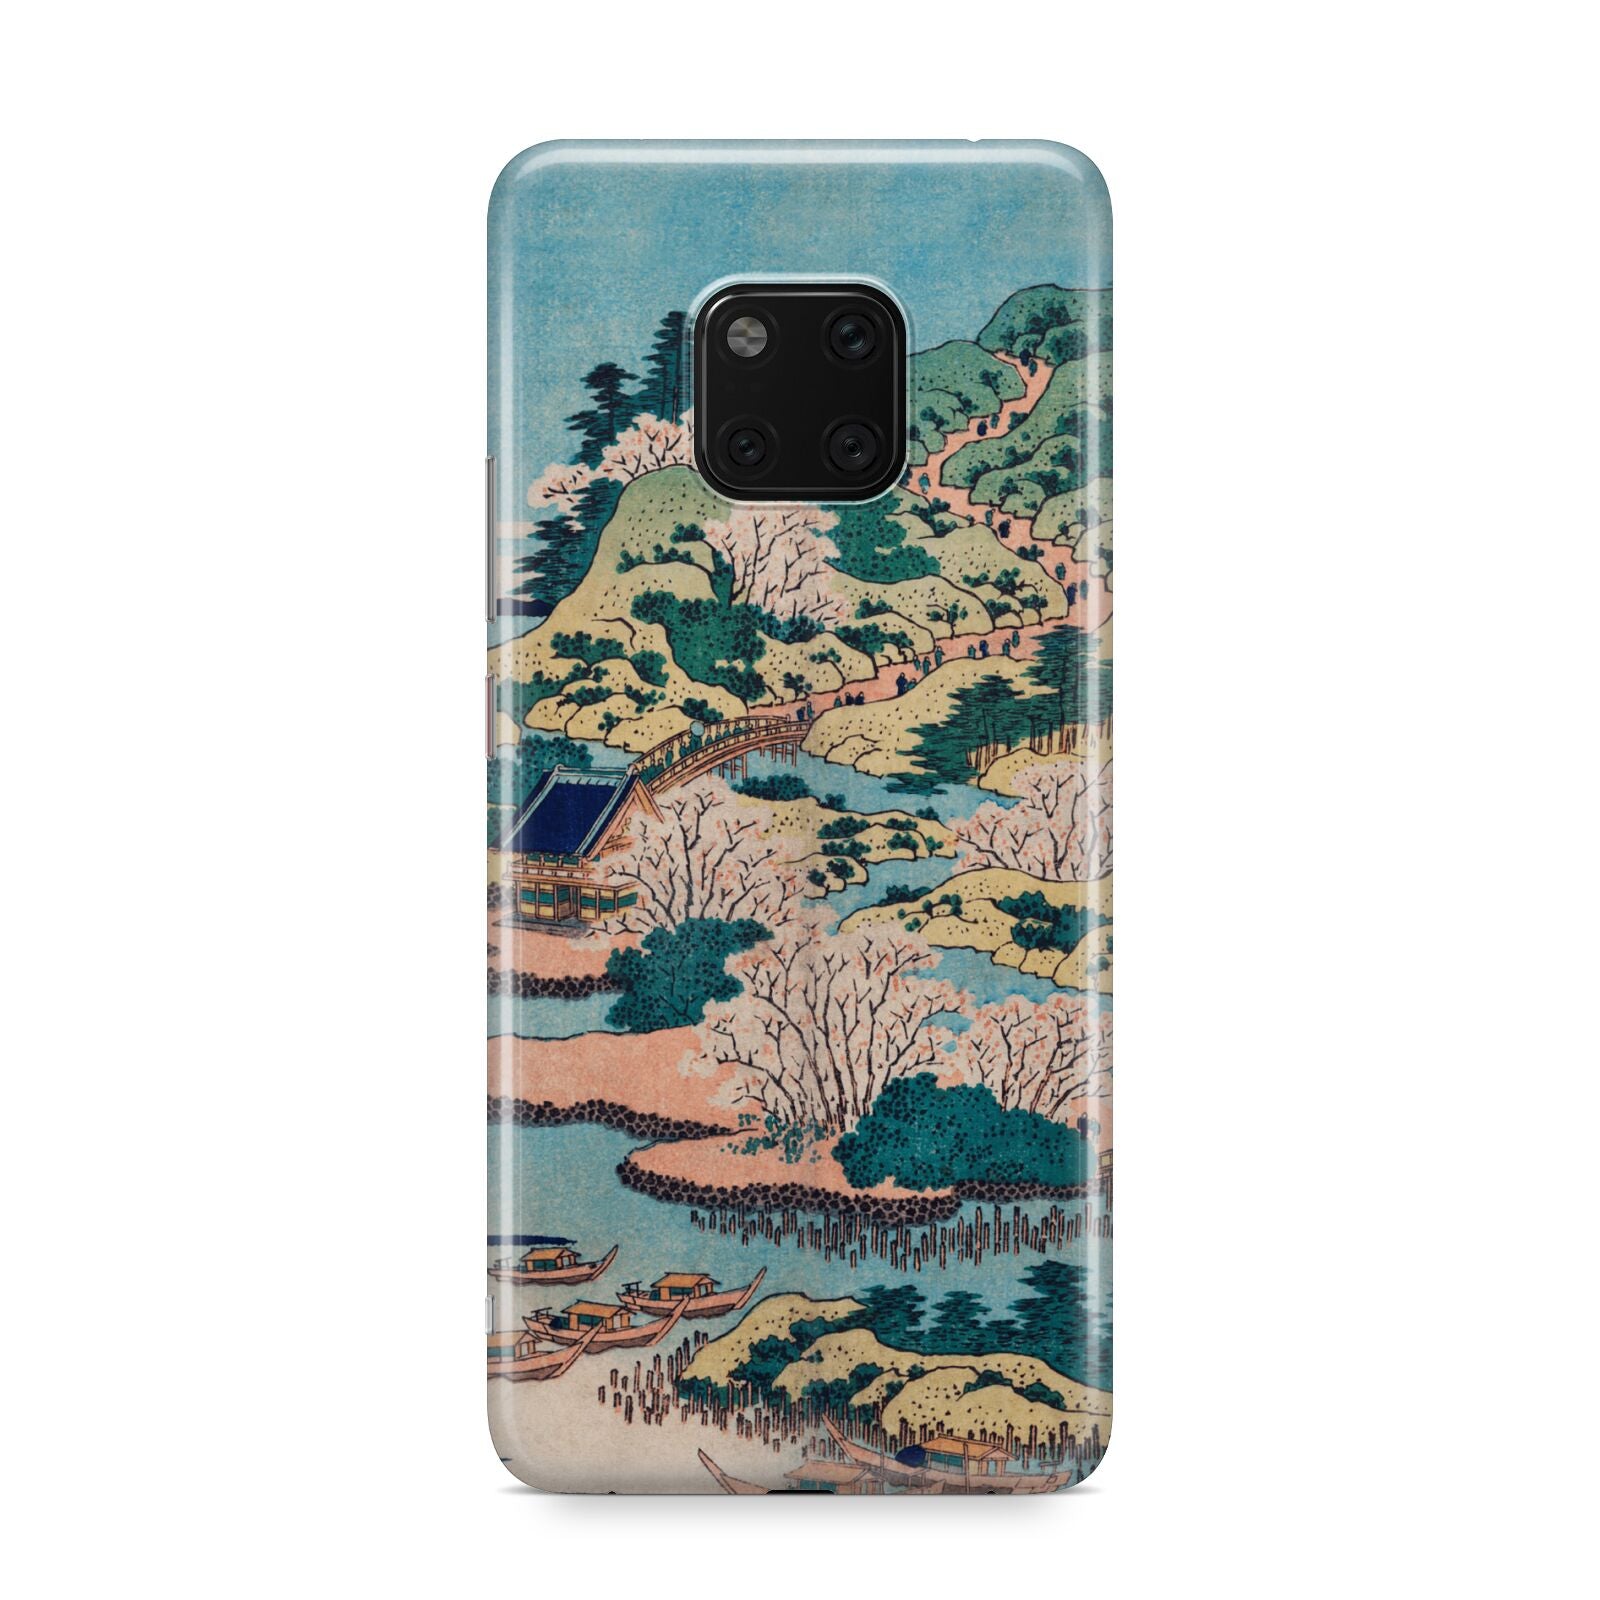 Coastal Community By Katsushika Hokusai Huawei Mate 20 Pro Phone Case